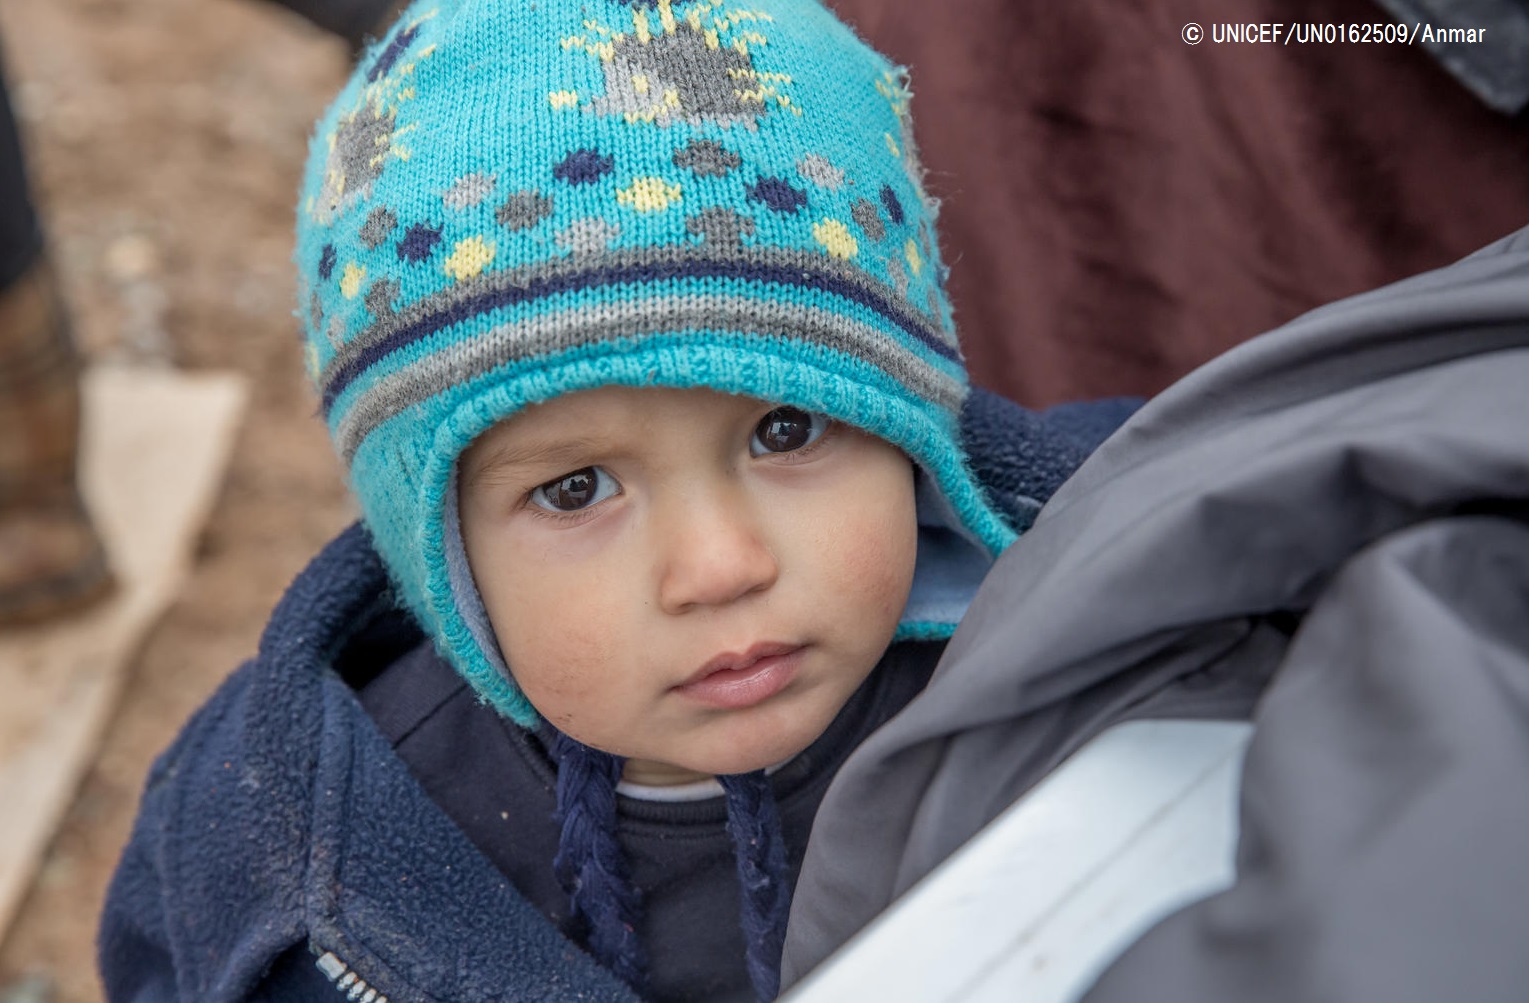 イラク シンジャル ヤジディ教徒の子どもたちに暖かい服を 山岳地帯 氷点下のなかテントで暮らす プレスリリース 公益財団法人日本ユニセフ 協会のプレスリリース